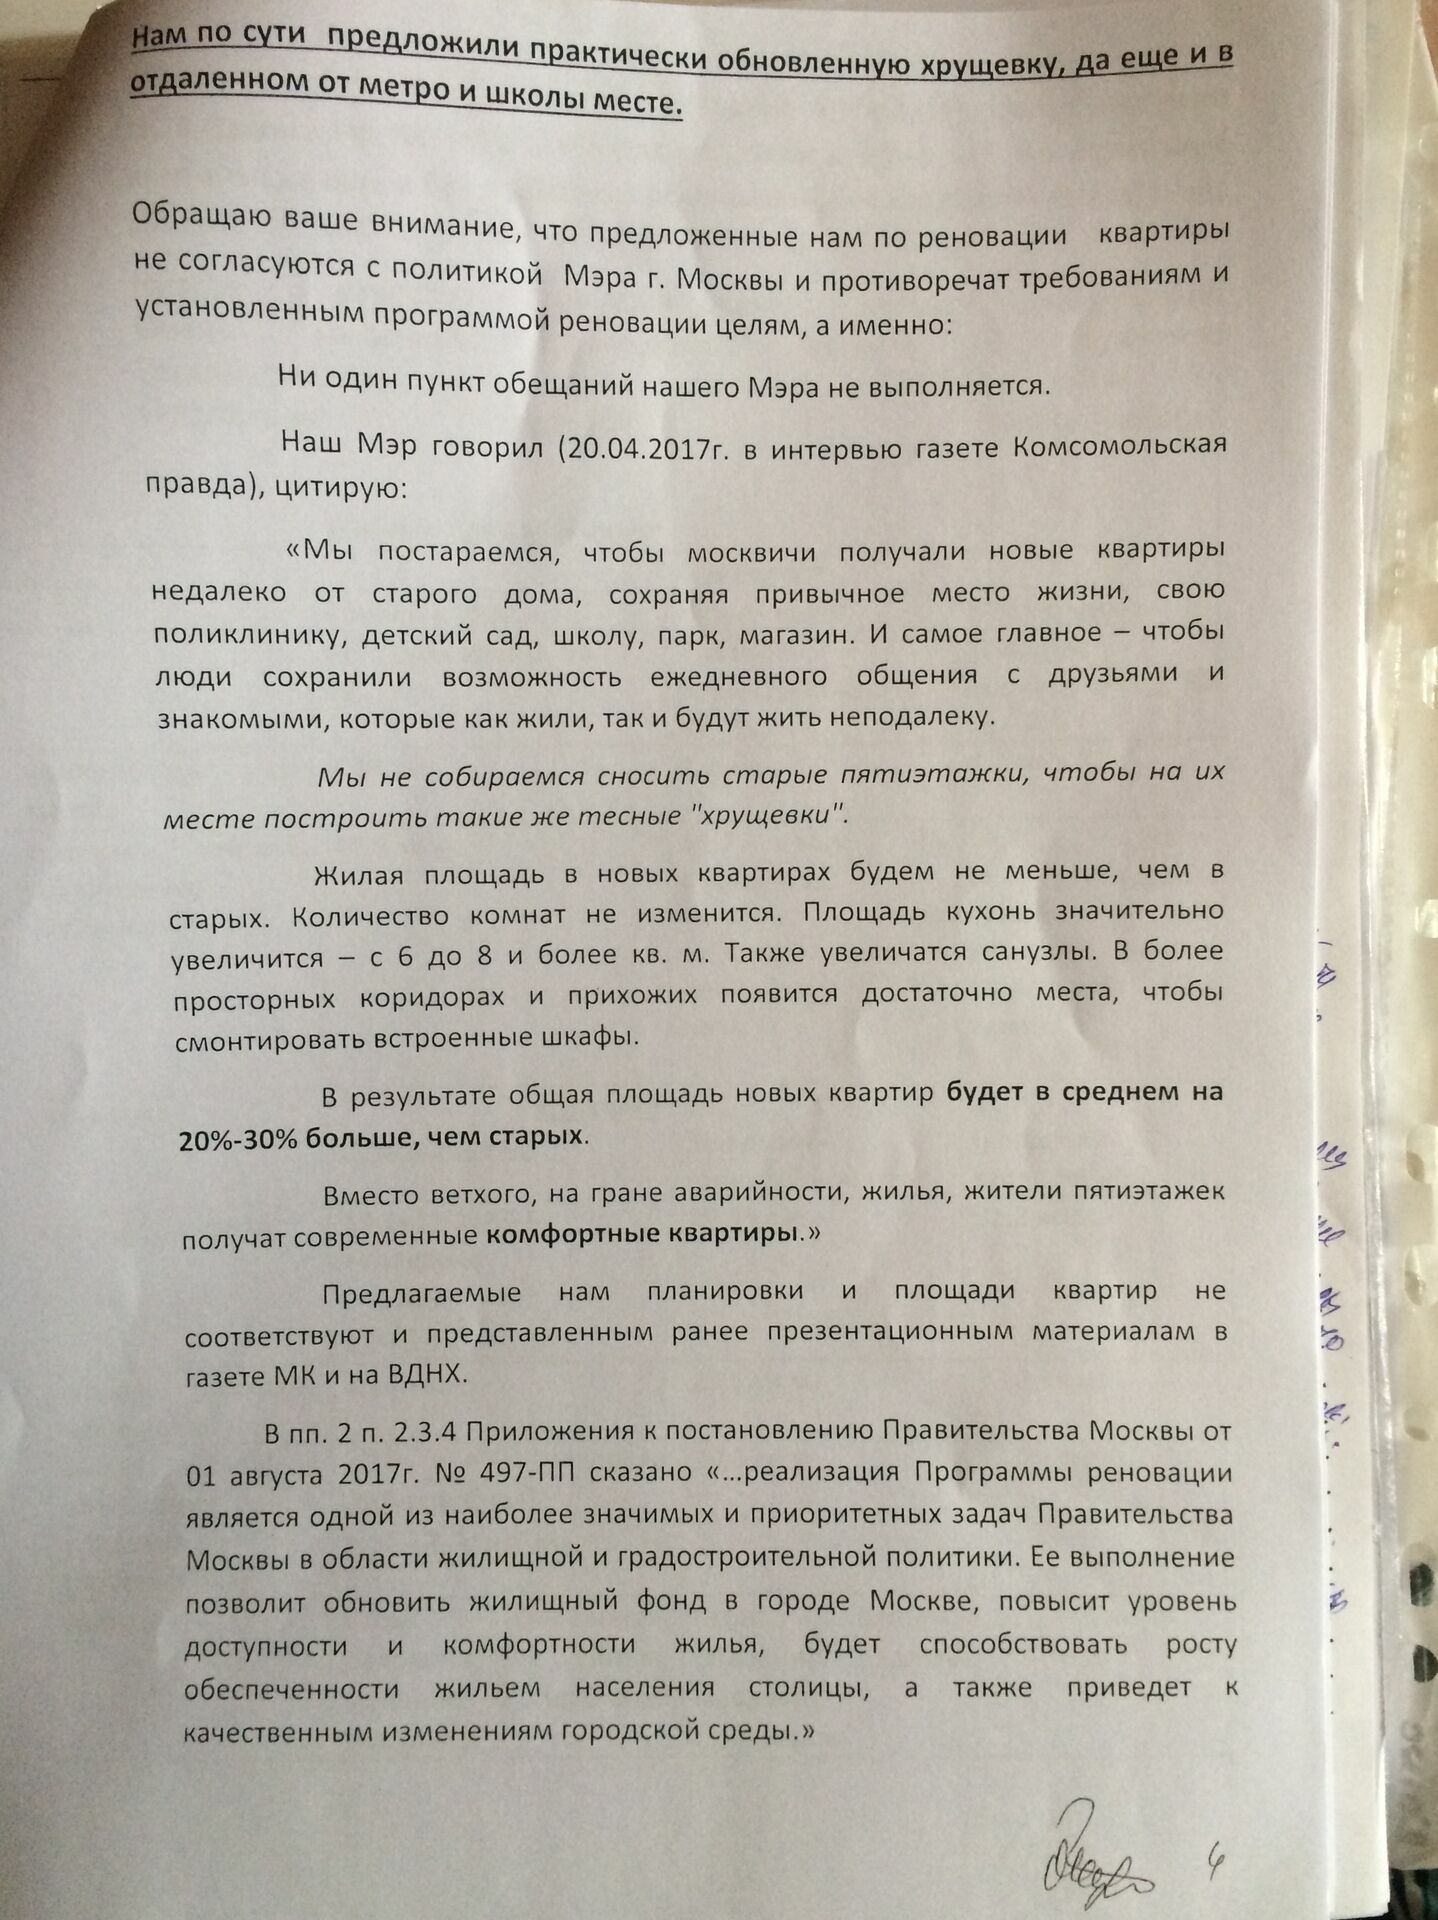 "Нам по сути предложили обновленную хрущевку" - пишут переселенцы московскую мэрию